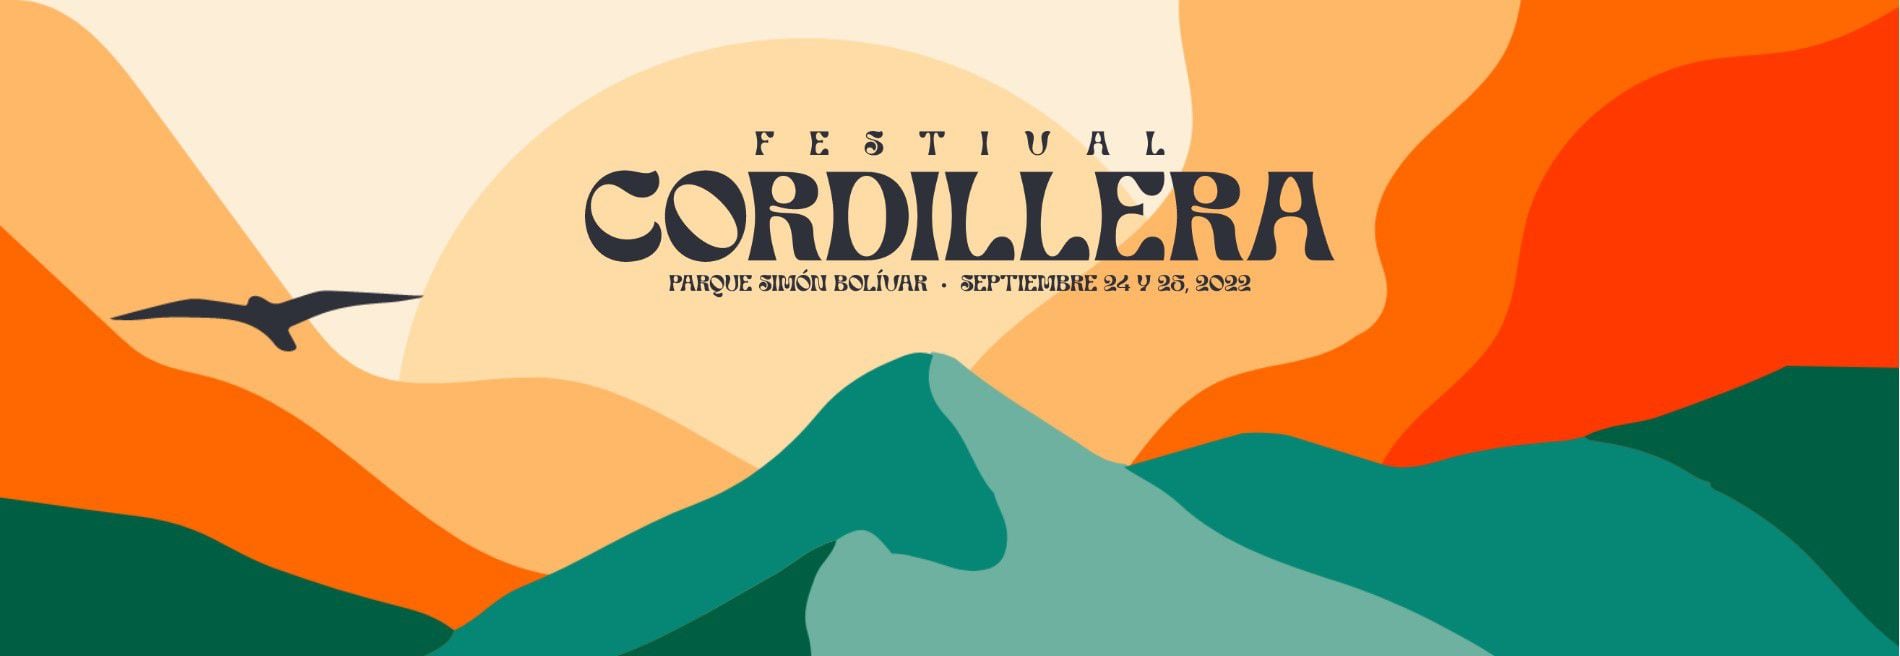 La venta para el público general será a partir del 3 de junio. Foto: Festival Cordillera.